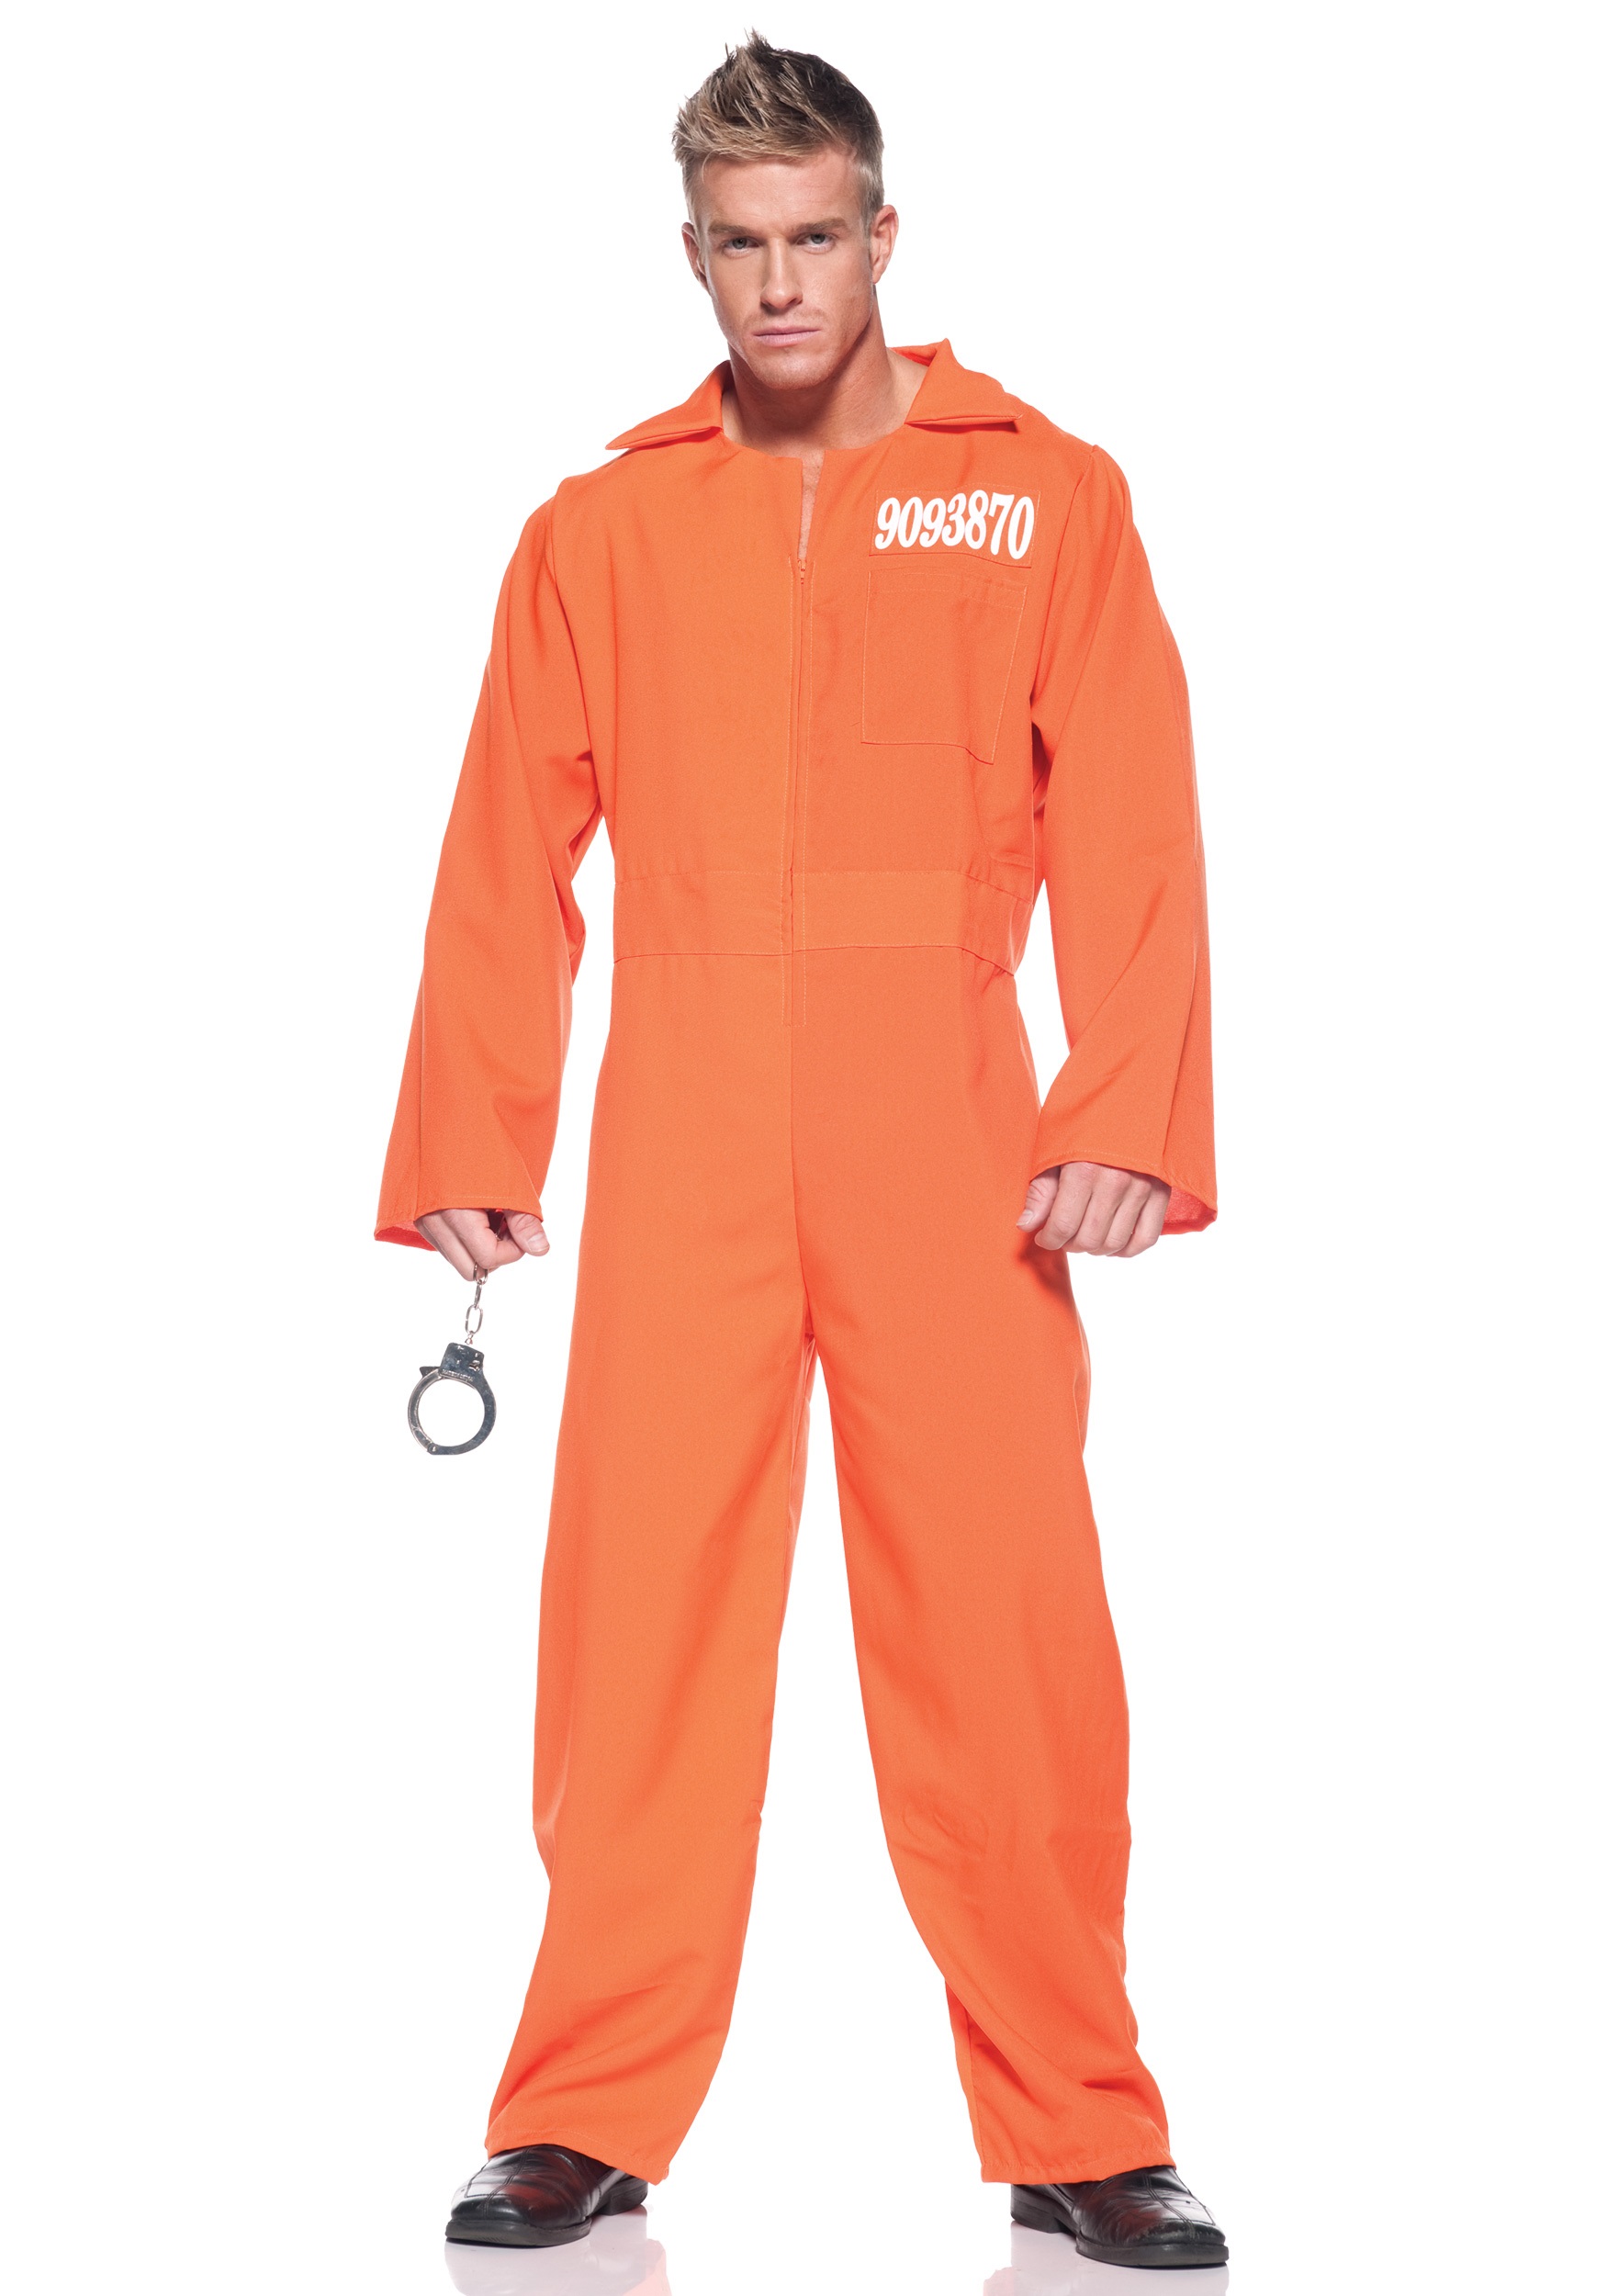 Photos - Fancy Dress Underwraps Men's Plus Size Prison Jumpsuit Costume Orange UN29131X